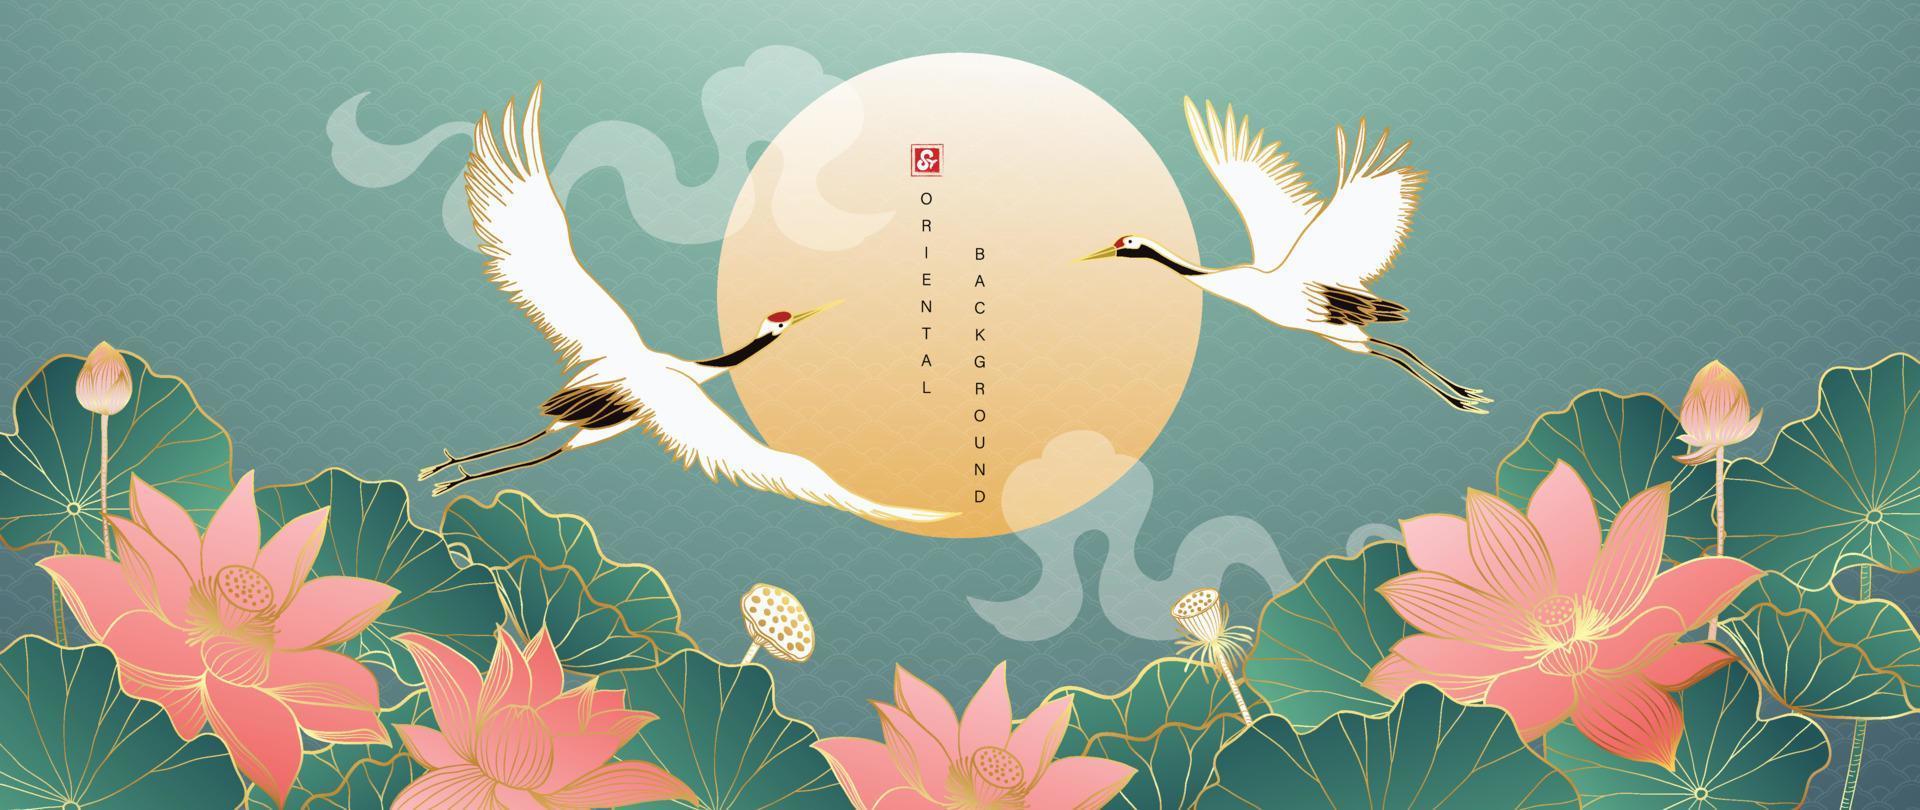 vector de fondo de estilo oriental dorado de lujo. diseño de papel pintado chino y japonés de elegantes pájaros grúa y flores de loto con textura de línea dorada degradada. diseño para decoración, decoración de paredes.